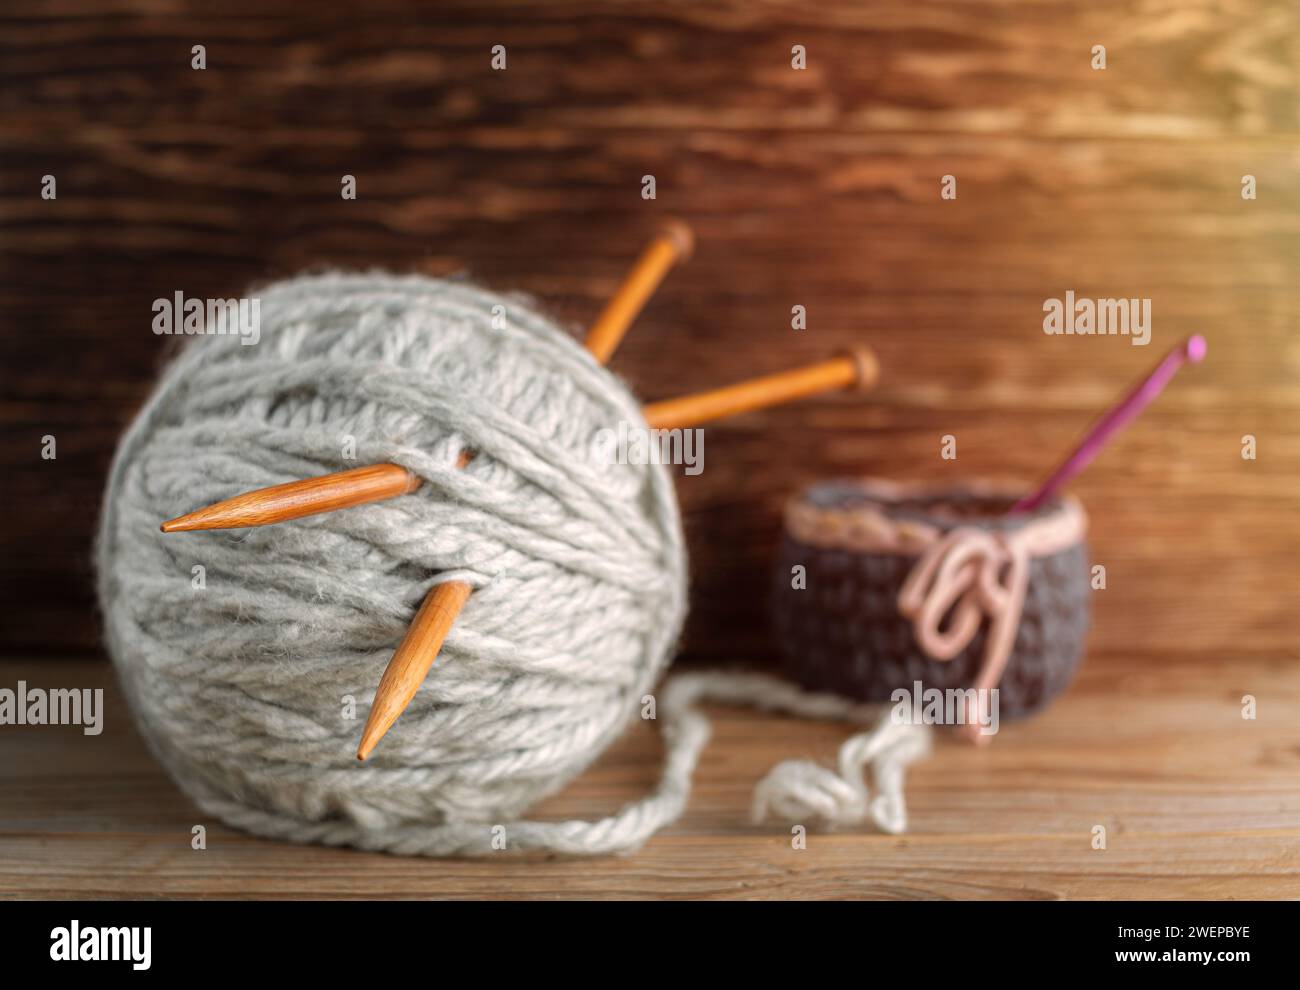 Les aiguilles à tricoter en bois sortent des écheveaux de fil sur un fond en bois. Banque D'Images